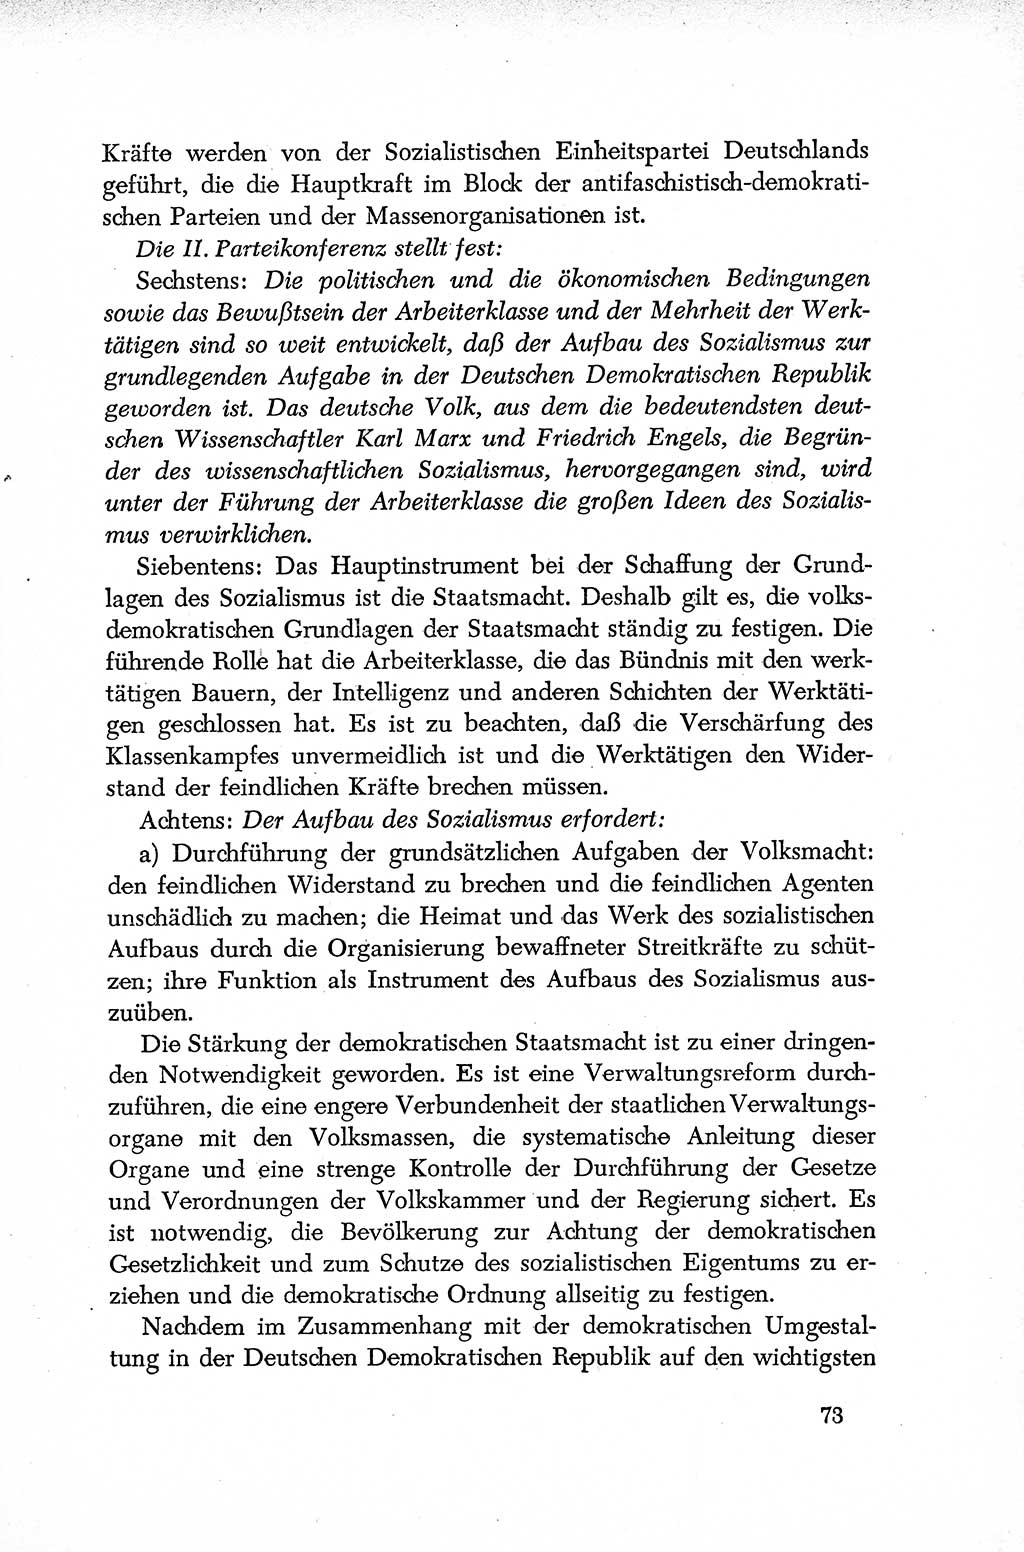 Dokumente der Sozialistischen Einheitspartei Deutschlands (SED) [Deutsche Demokratische Republik (DDR)] 1952-1953, Seite 73 (Dok. SED DDR 1952-1953, S. 73)